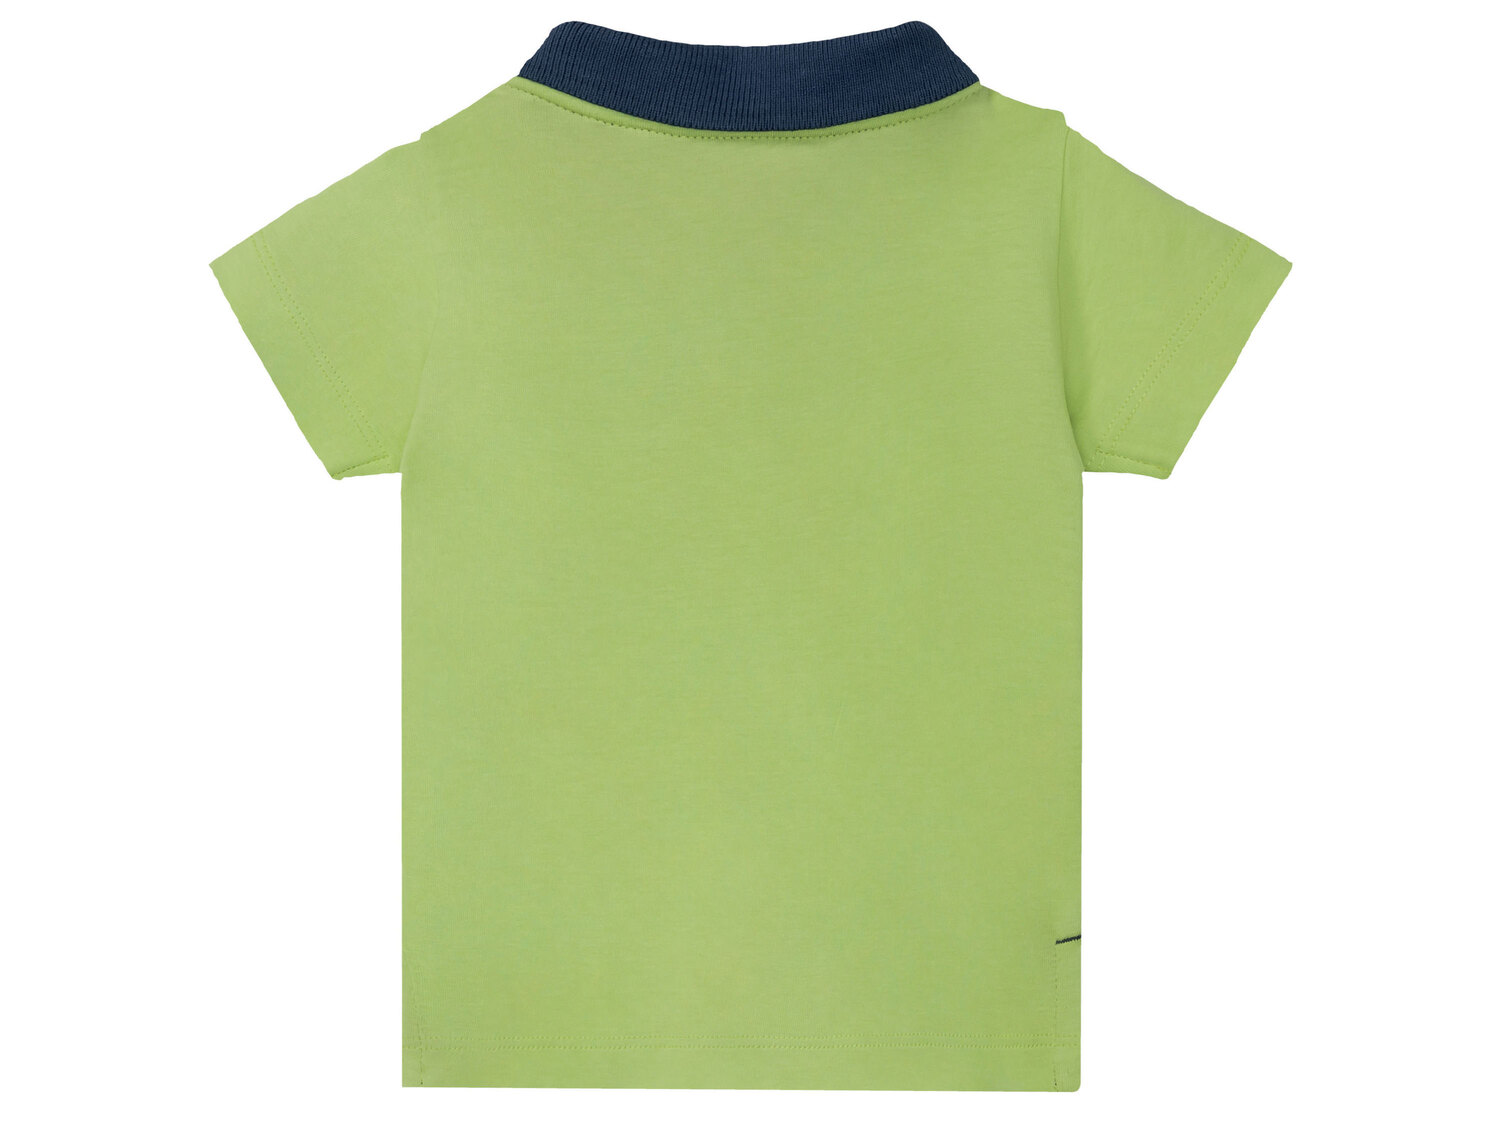 Koszulka dziecięca z biobawełny , cena 6,00 PLN 
różne wzory i rozmiary 
- ...